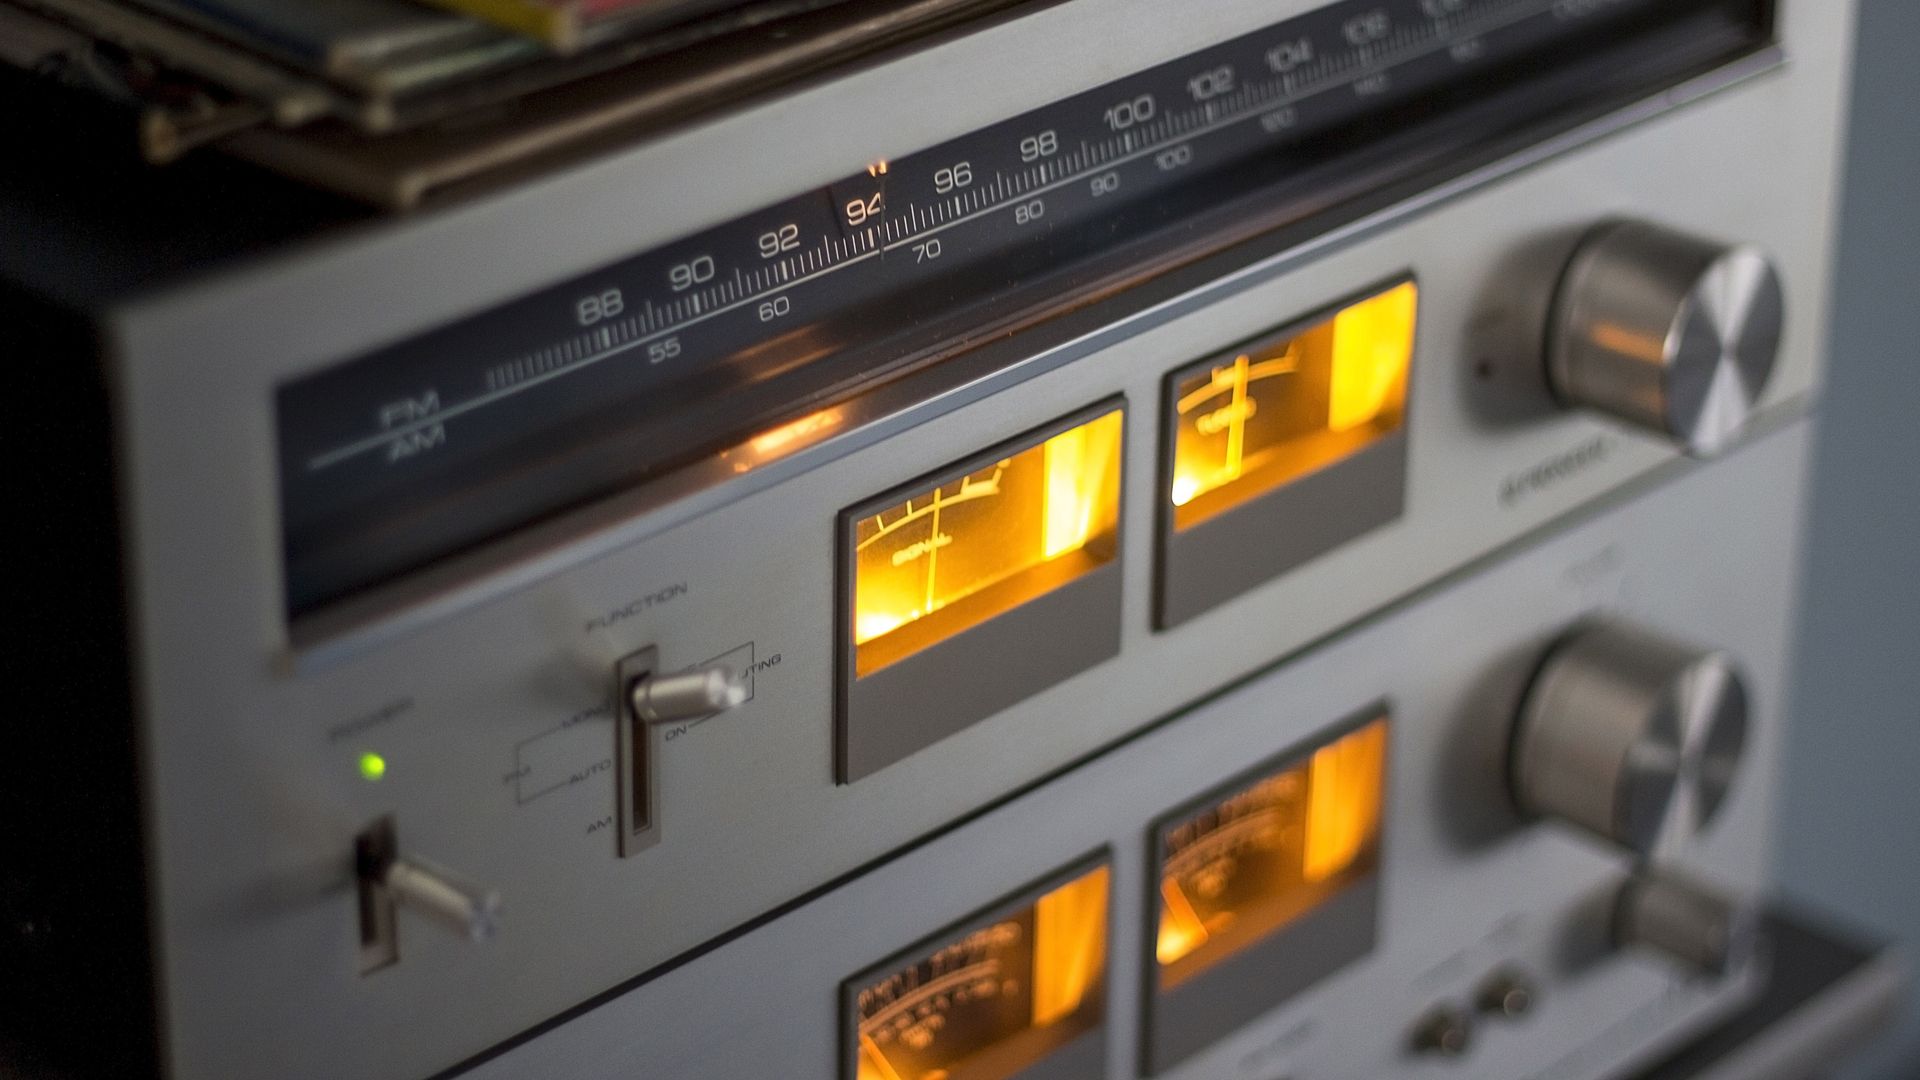 Fluisteren Celsius precedent Analoge radio verdwijnt: dit moet je erover weten - Kassa - BNNVARA